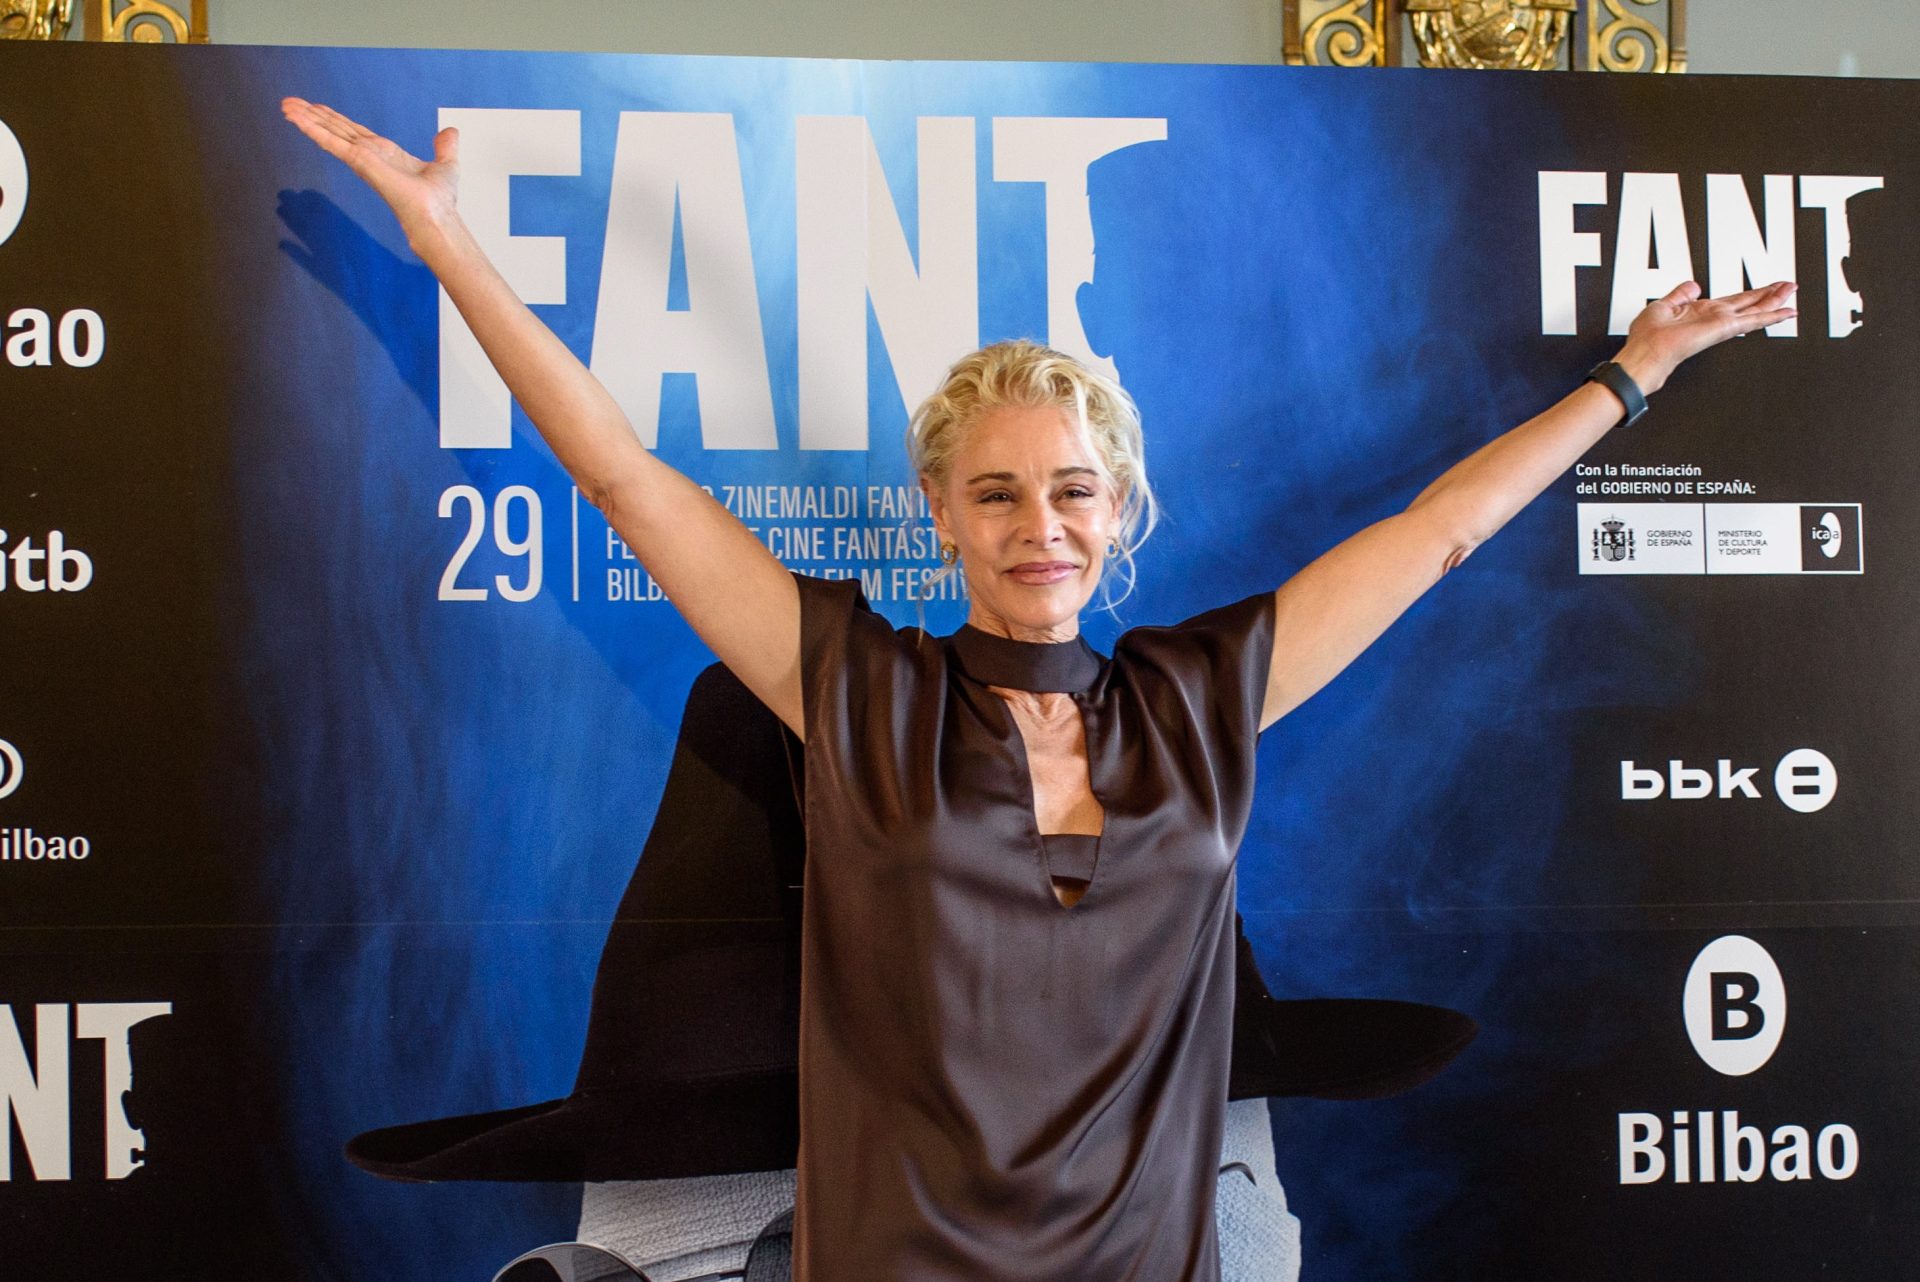 La actriz Belén Rueda posa antes de la rueda de prensa celebrada en el marco del Festival de Cine Fantástico de Bilbao-FANT, que le ha distinguido con el Premio "Estrella Fantástica". EFE/Javier Zorrilla